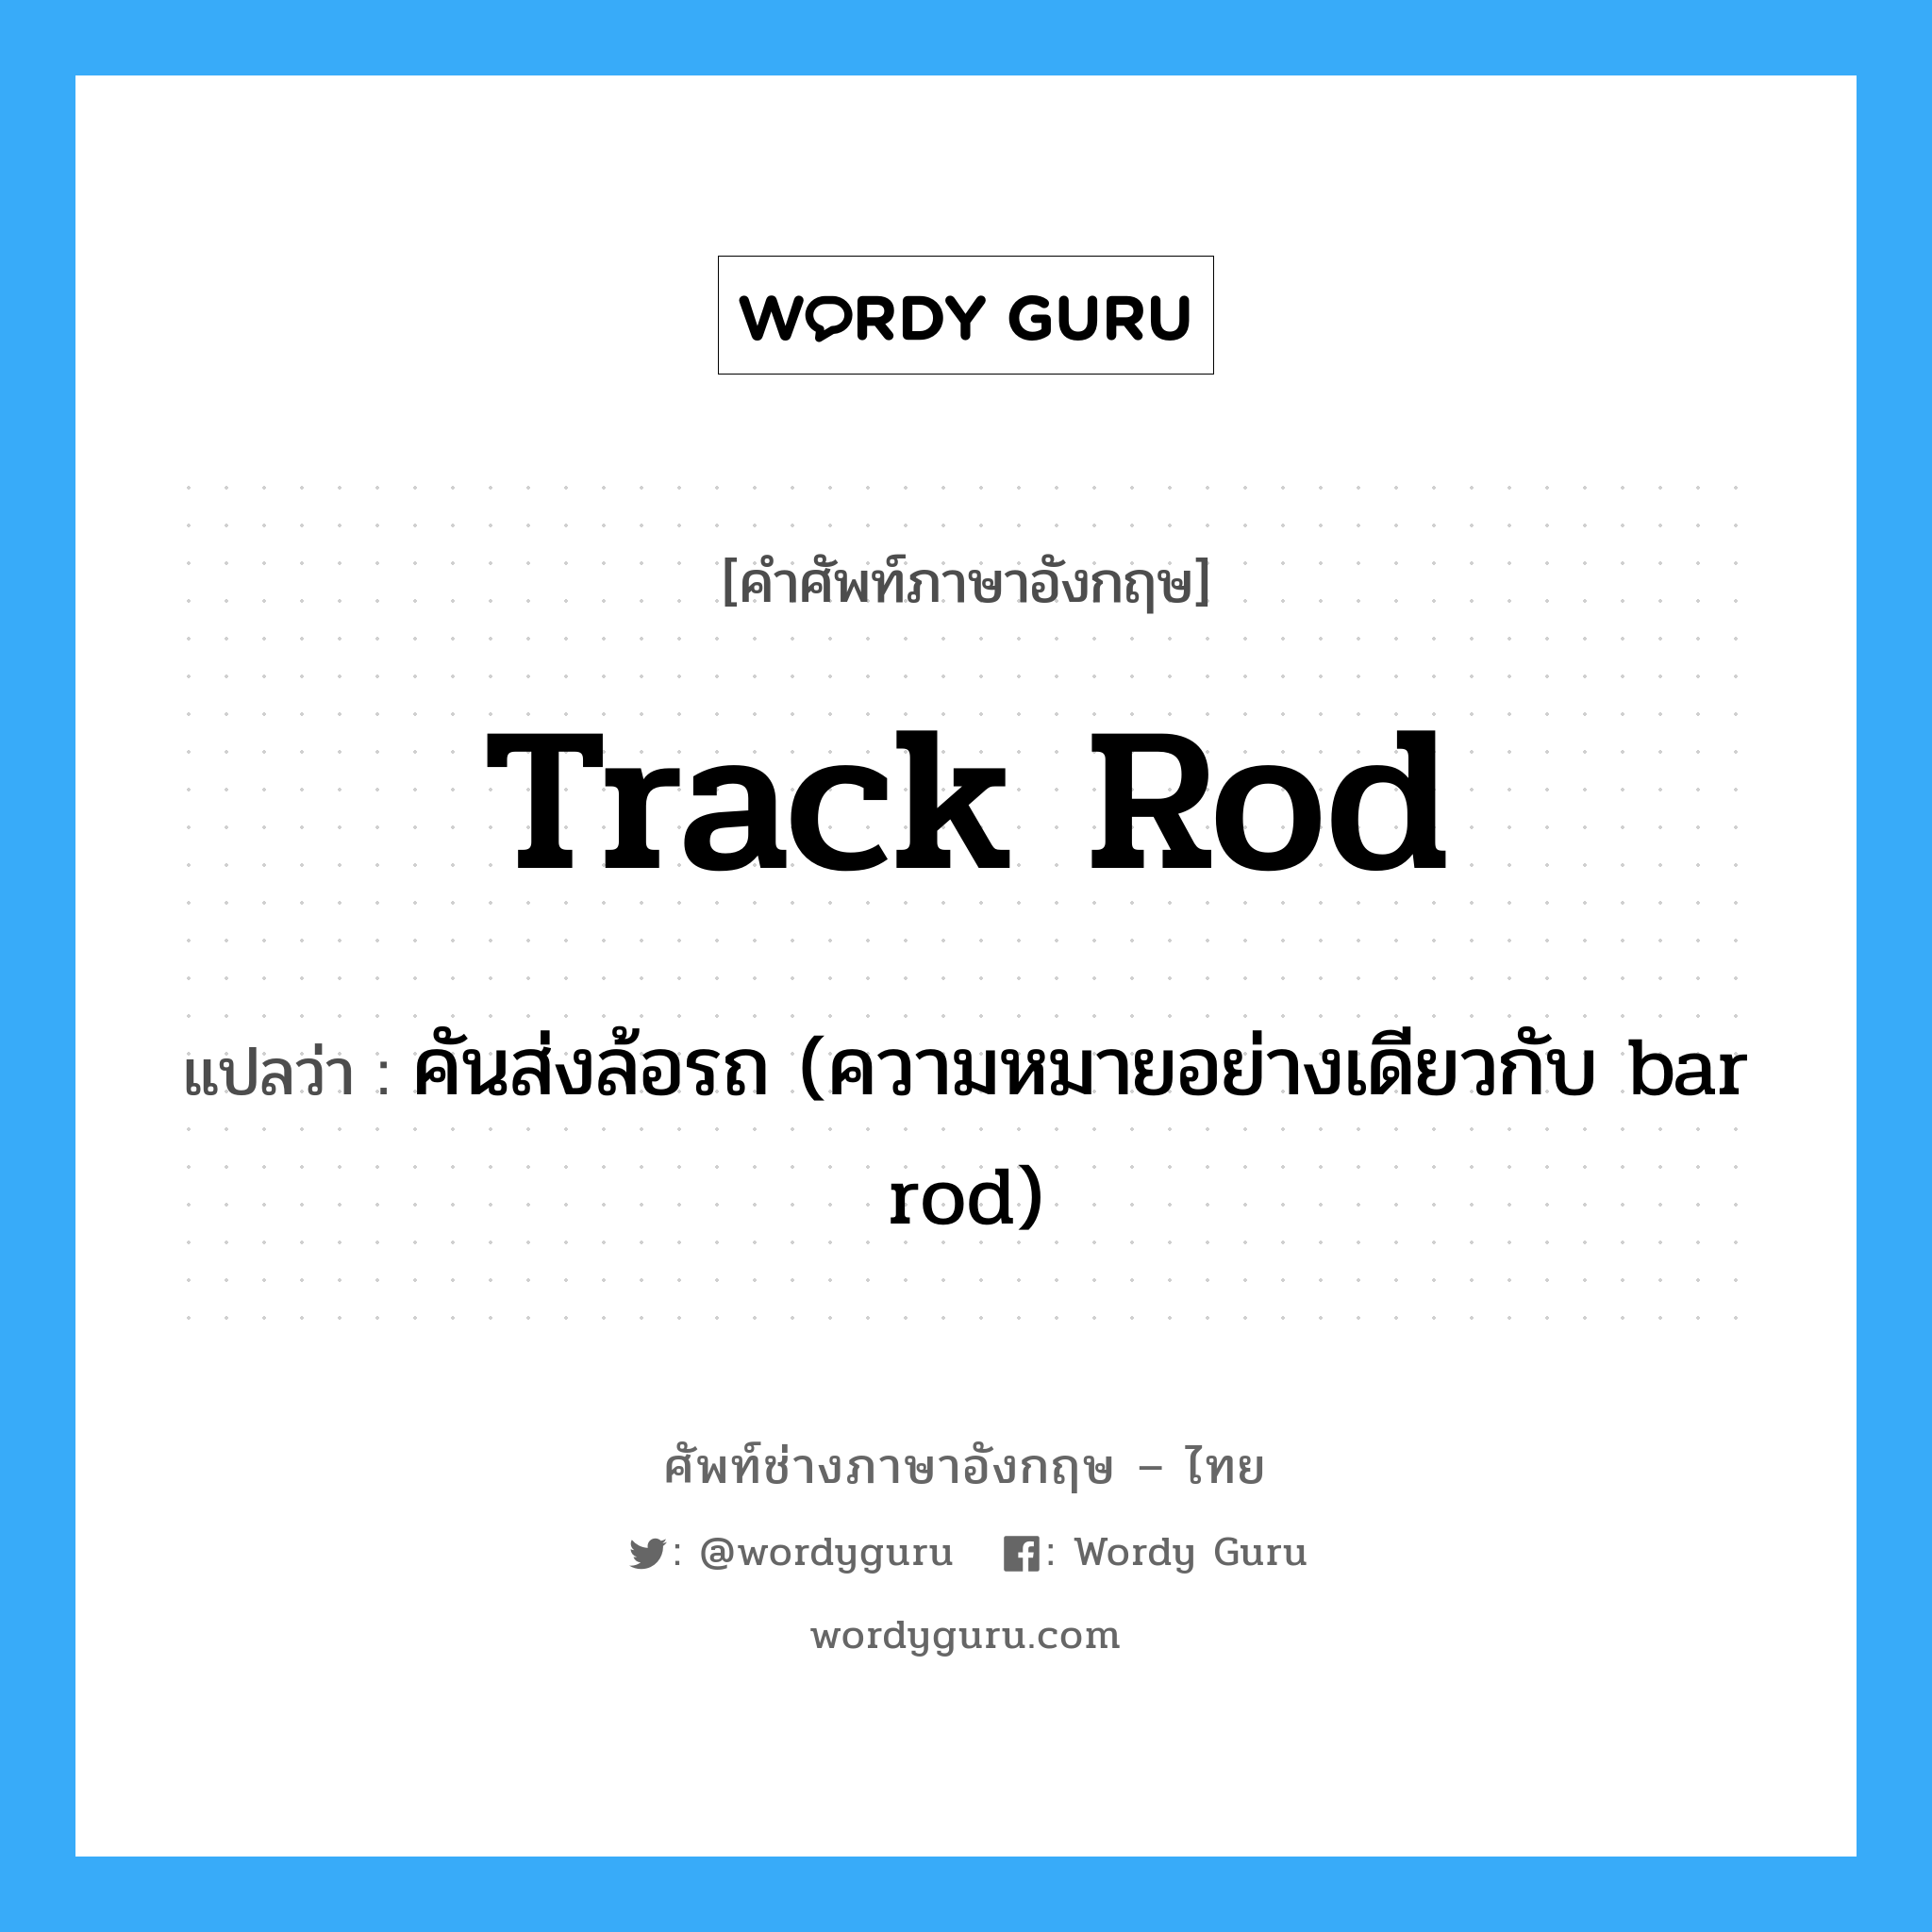 คันส่งล้อรถ (ความหมายอย่างเดียวกับ bar rod) ภาษาอังกฤษ?, คำศัพท์ช่างภาษาอังกฤษ - ไทย คันส่งล้อรถ (ความหมายอย่างเดียวกับ bar rod) คำศัพท์ภาษาอังกฤษ คันส่งล้อรถ (ความหมายอย่างเดียวกับ bar rod) แปลว่า track rod